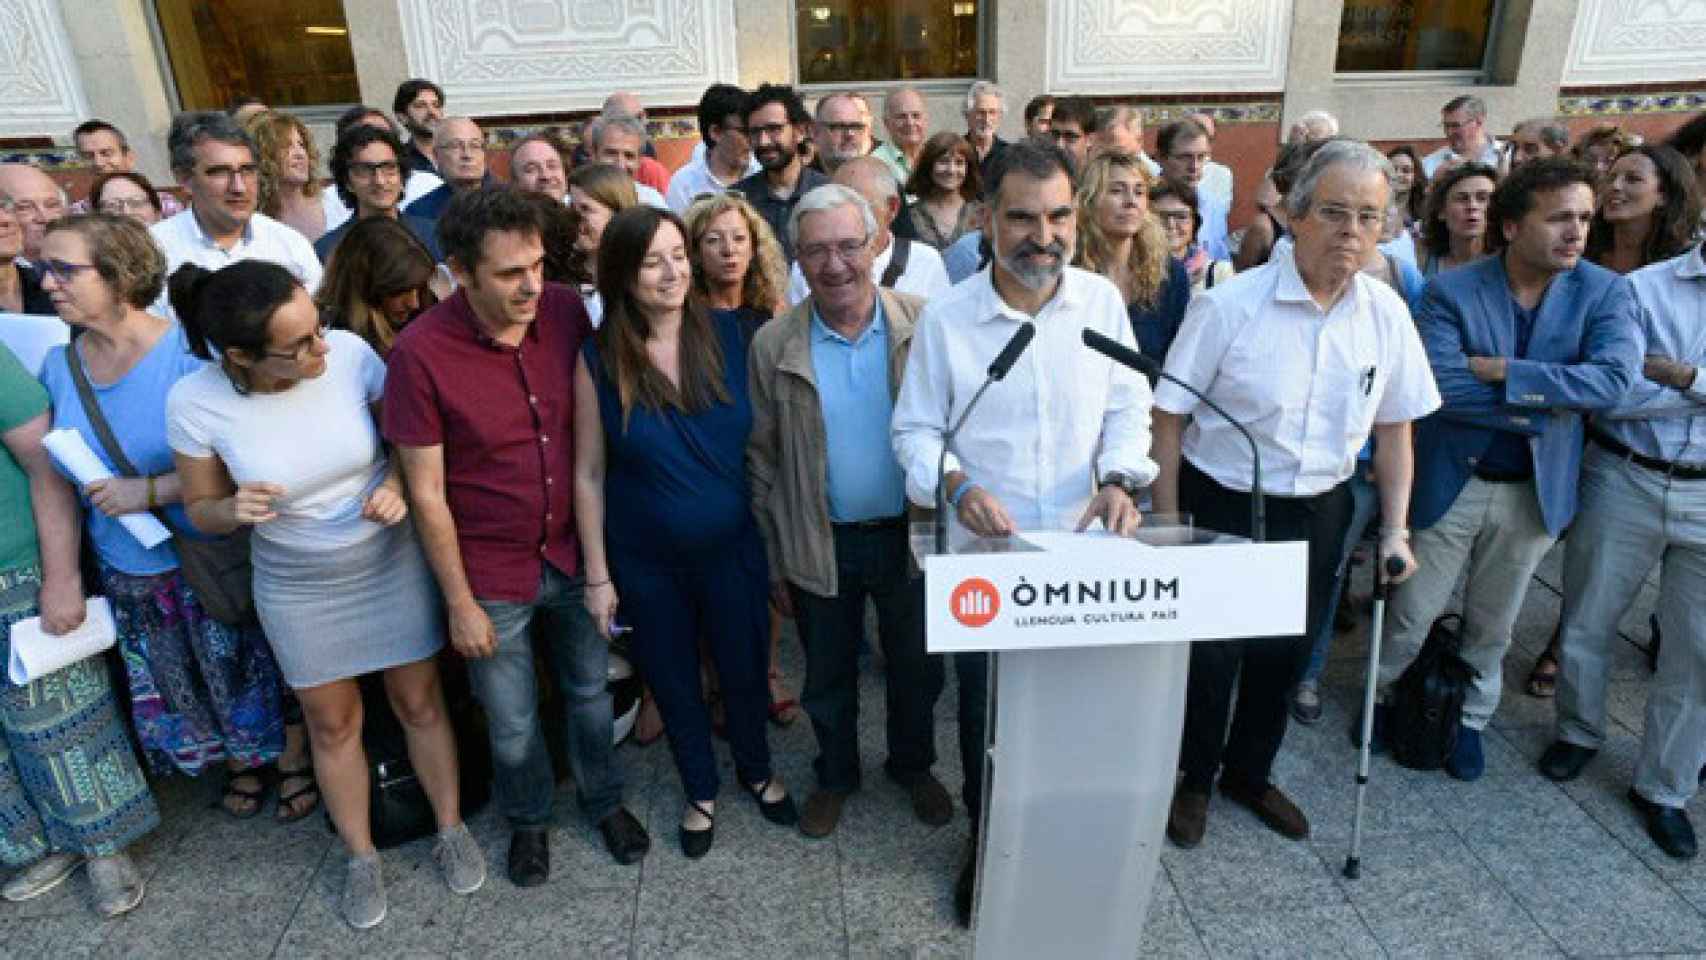 El presidente de Òmnium Cultural, Jordi Cruixart, que ha hablado de aumentar las cuotas, durante un mitin / CG